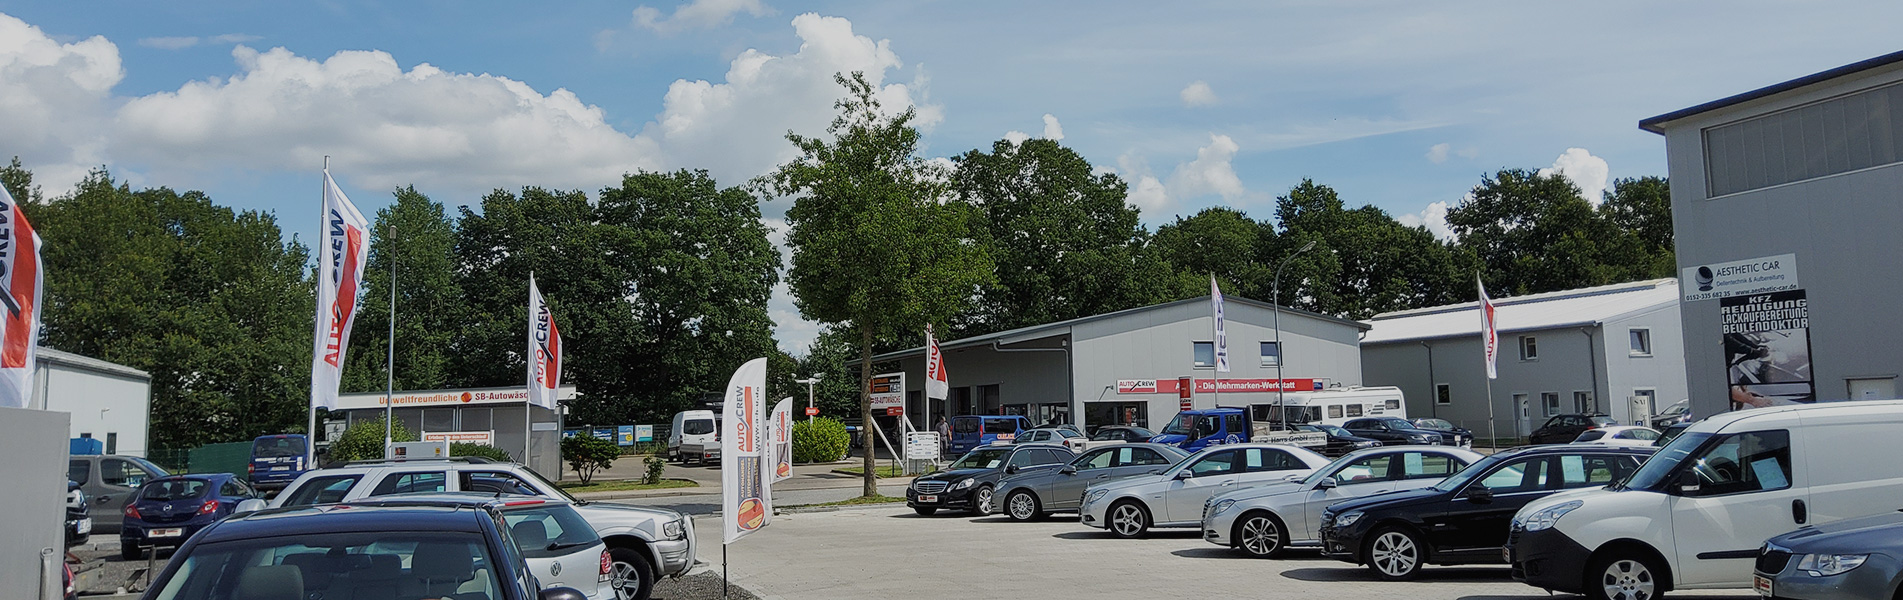 AHU AutoCrew - Autohandel und KFZ-Reparatur in Henstedt-Ulzburg